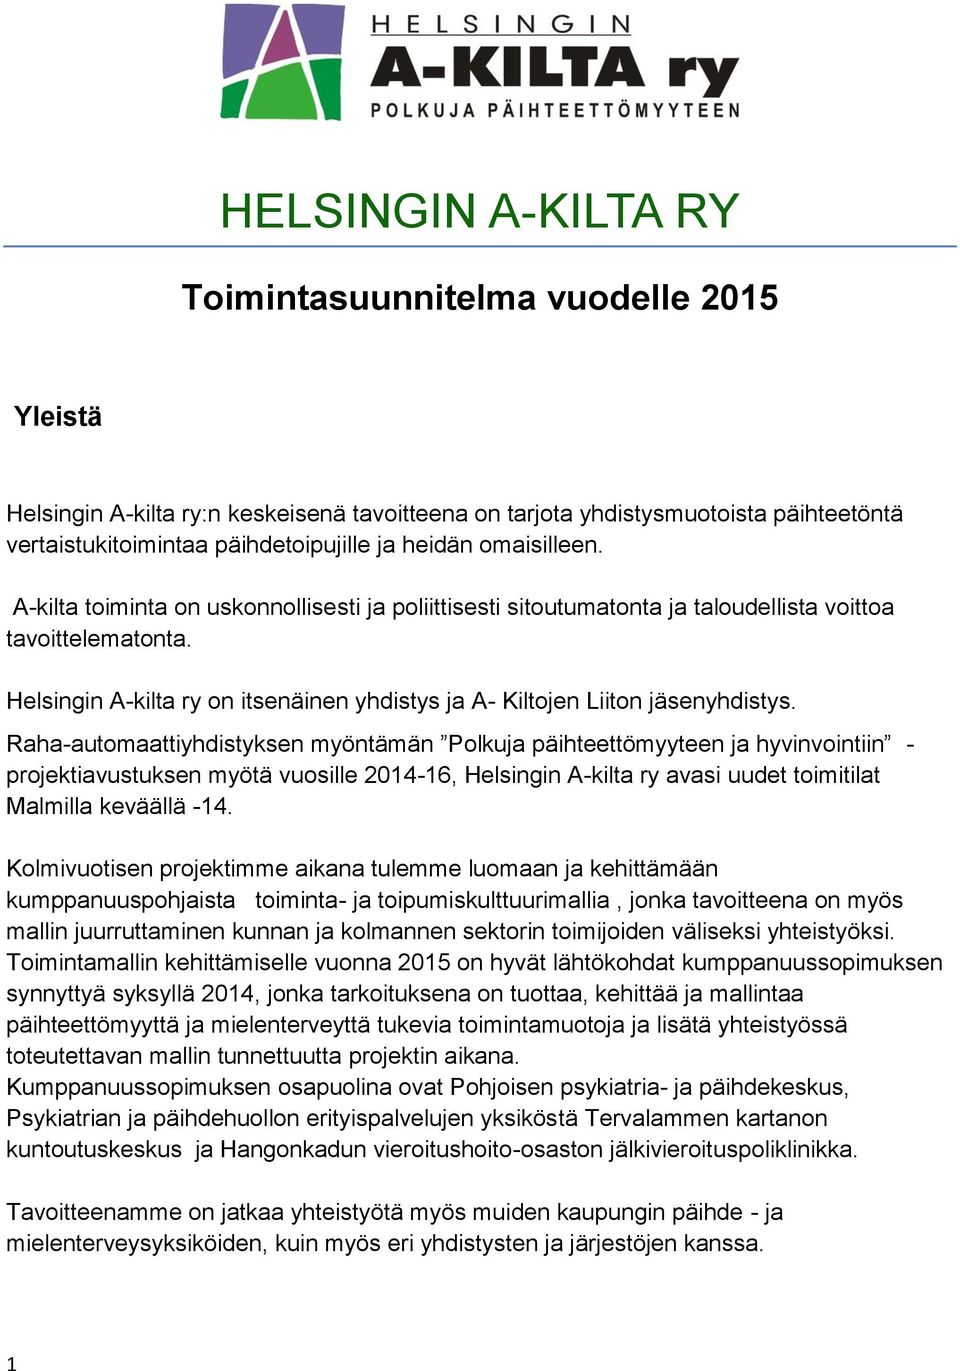 Helsingin A-kilta ry on itsenäinen yhdistys ja A- Kiltojen Liiton jäsenyhdistys.